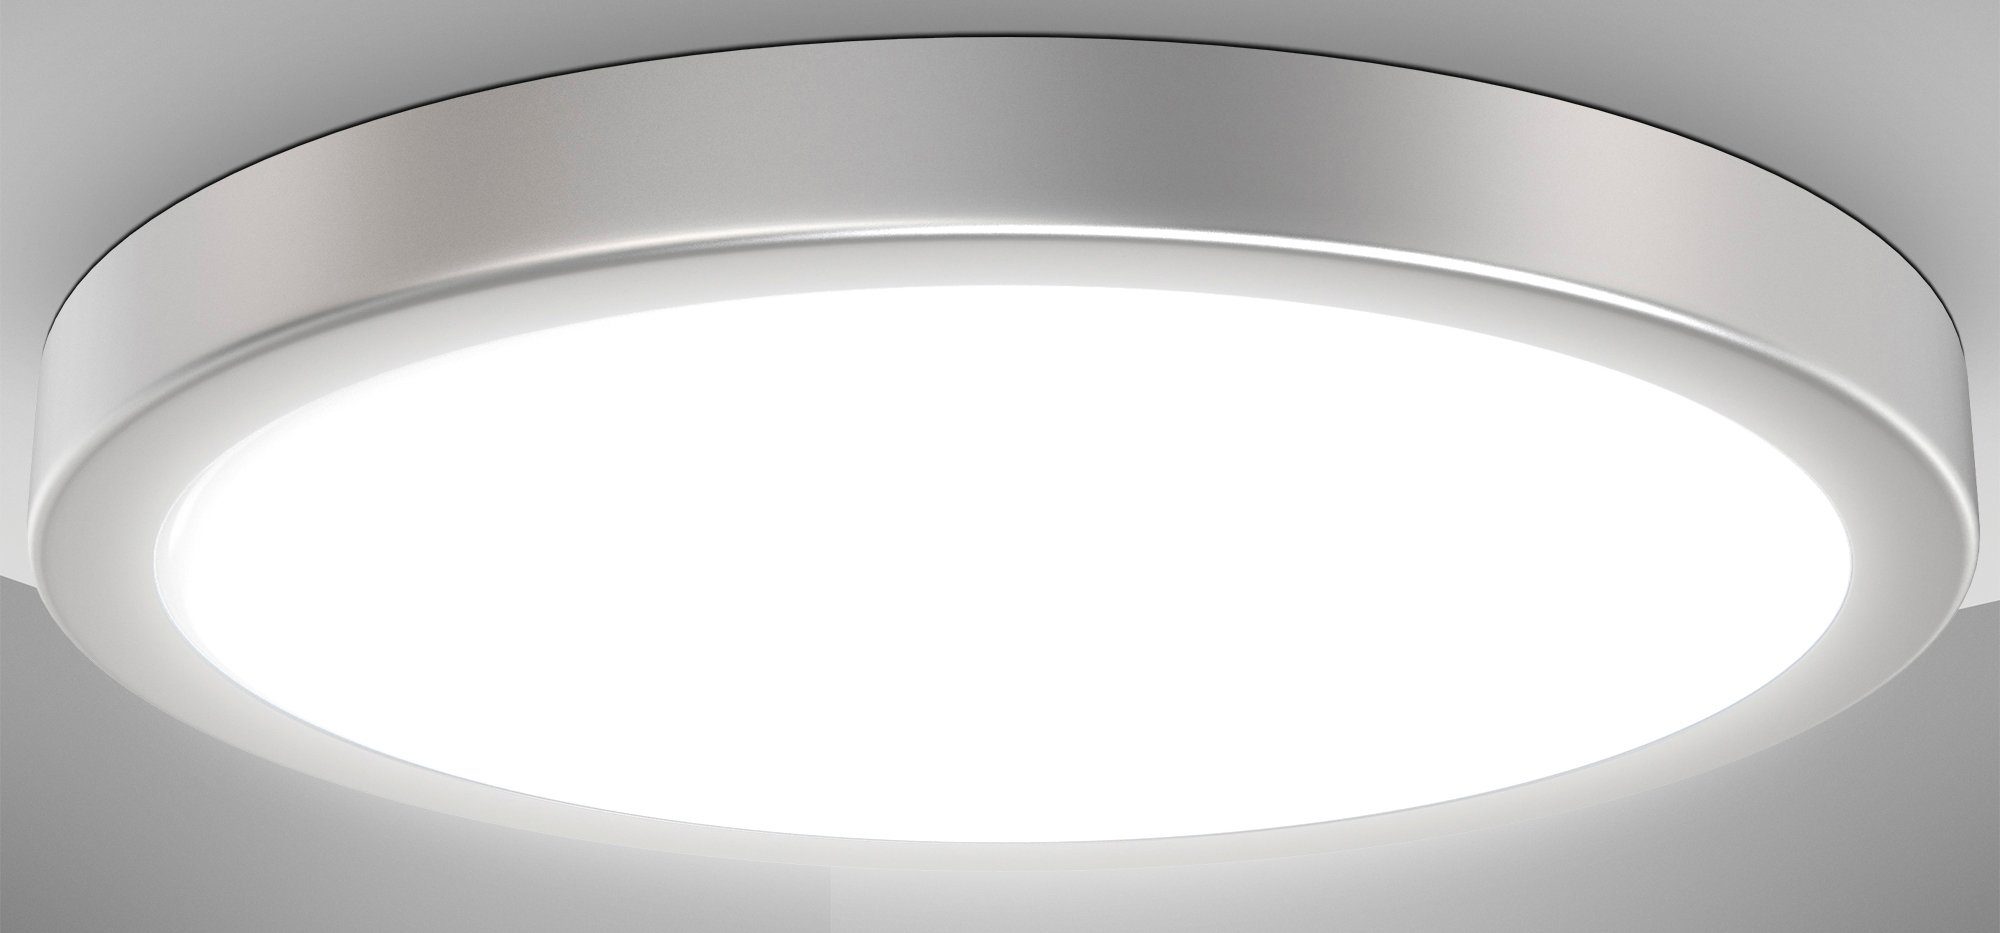 Neutralweiß, integriert, Deckenleuchte Silberfarbig, LED LED Ø38cm, fest Küchenlampe Deckenlampe, BK_DL1537 LED 24W, 3.000Lm, B.K.Licht Neutralweißes 4.000K, Licht,